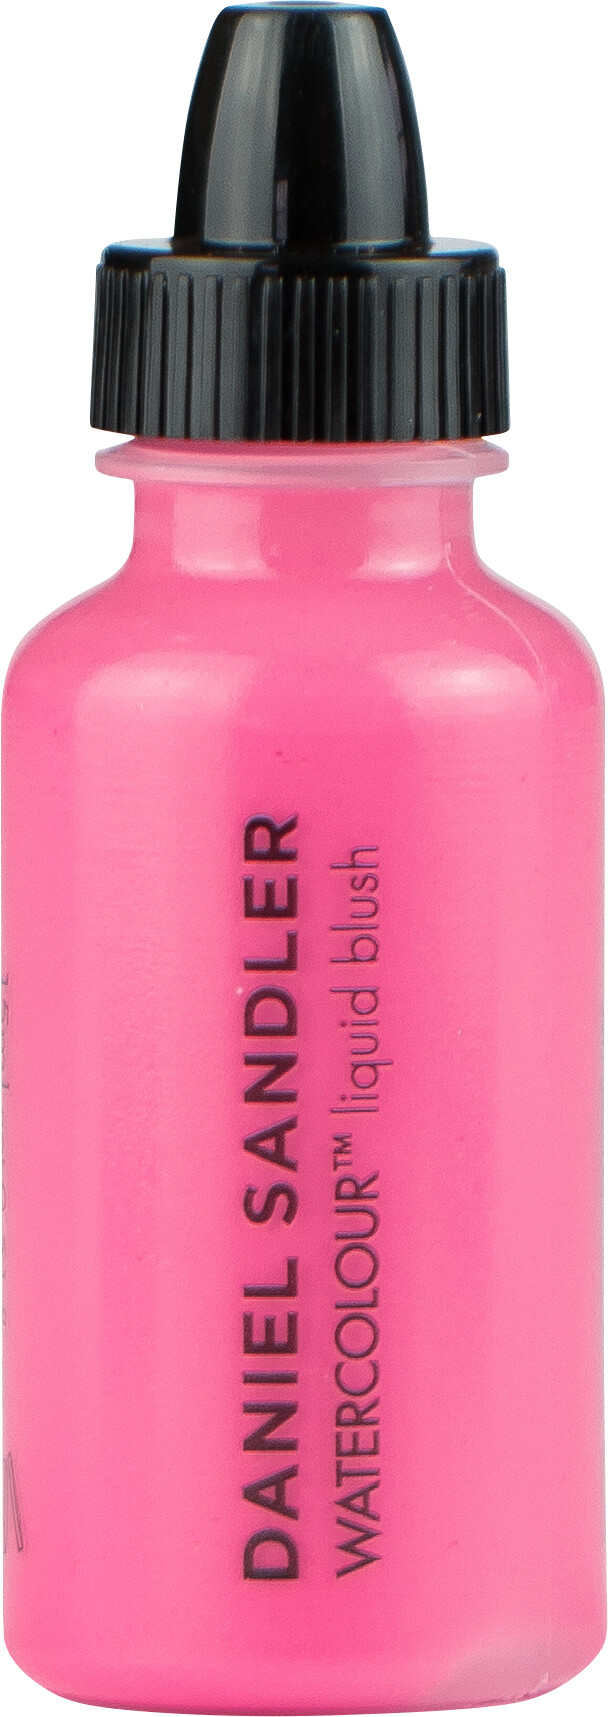 Daniel Sandler Watercolour Liquid Blush 15ml Acid